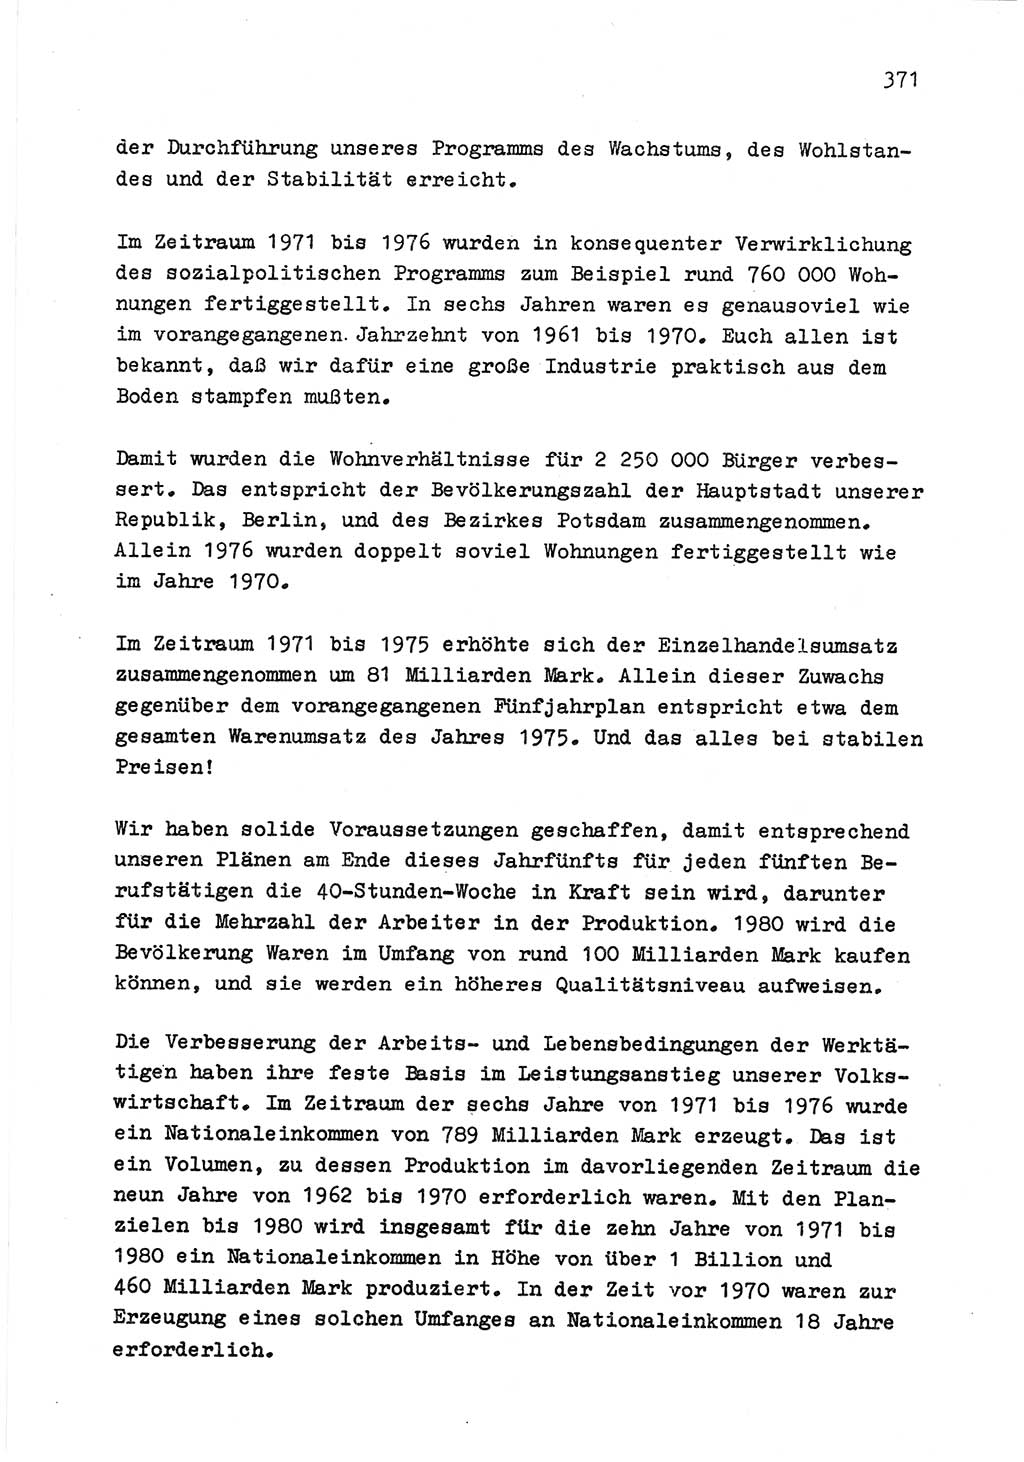 Zu Fragen der Parteiarbeit [Sozialistische Einheitspartei Deutschlands (SED) Deutsche Demokratische Republik (DDR)] 1979, Seite 371 (Fr. PA SED DDR 1979, S. 371)